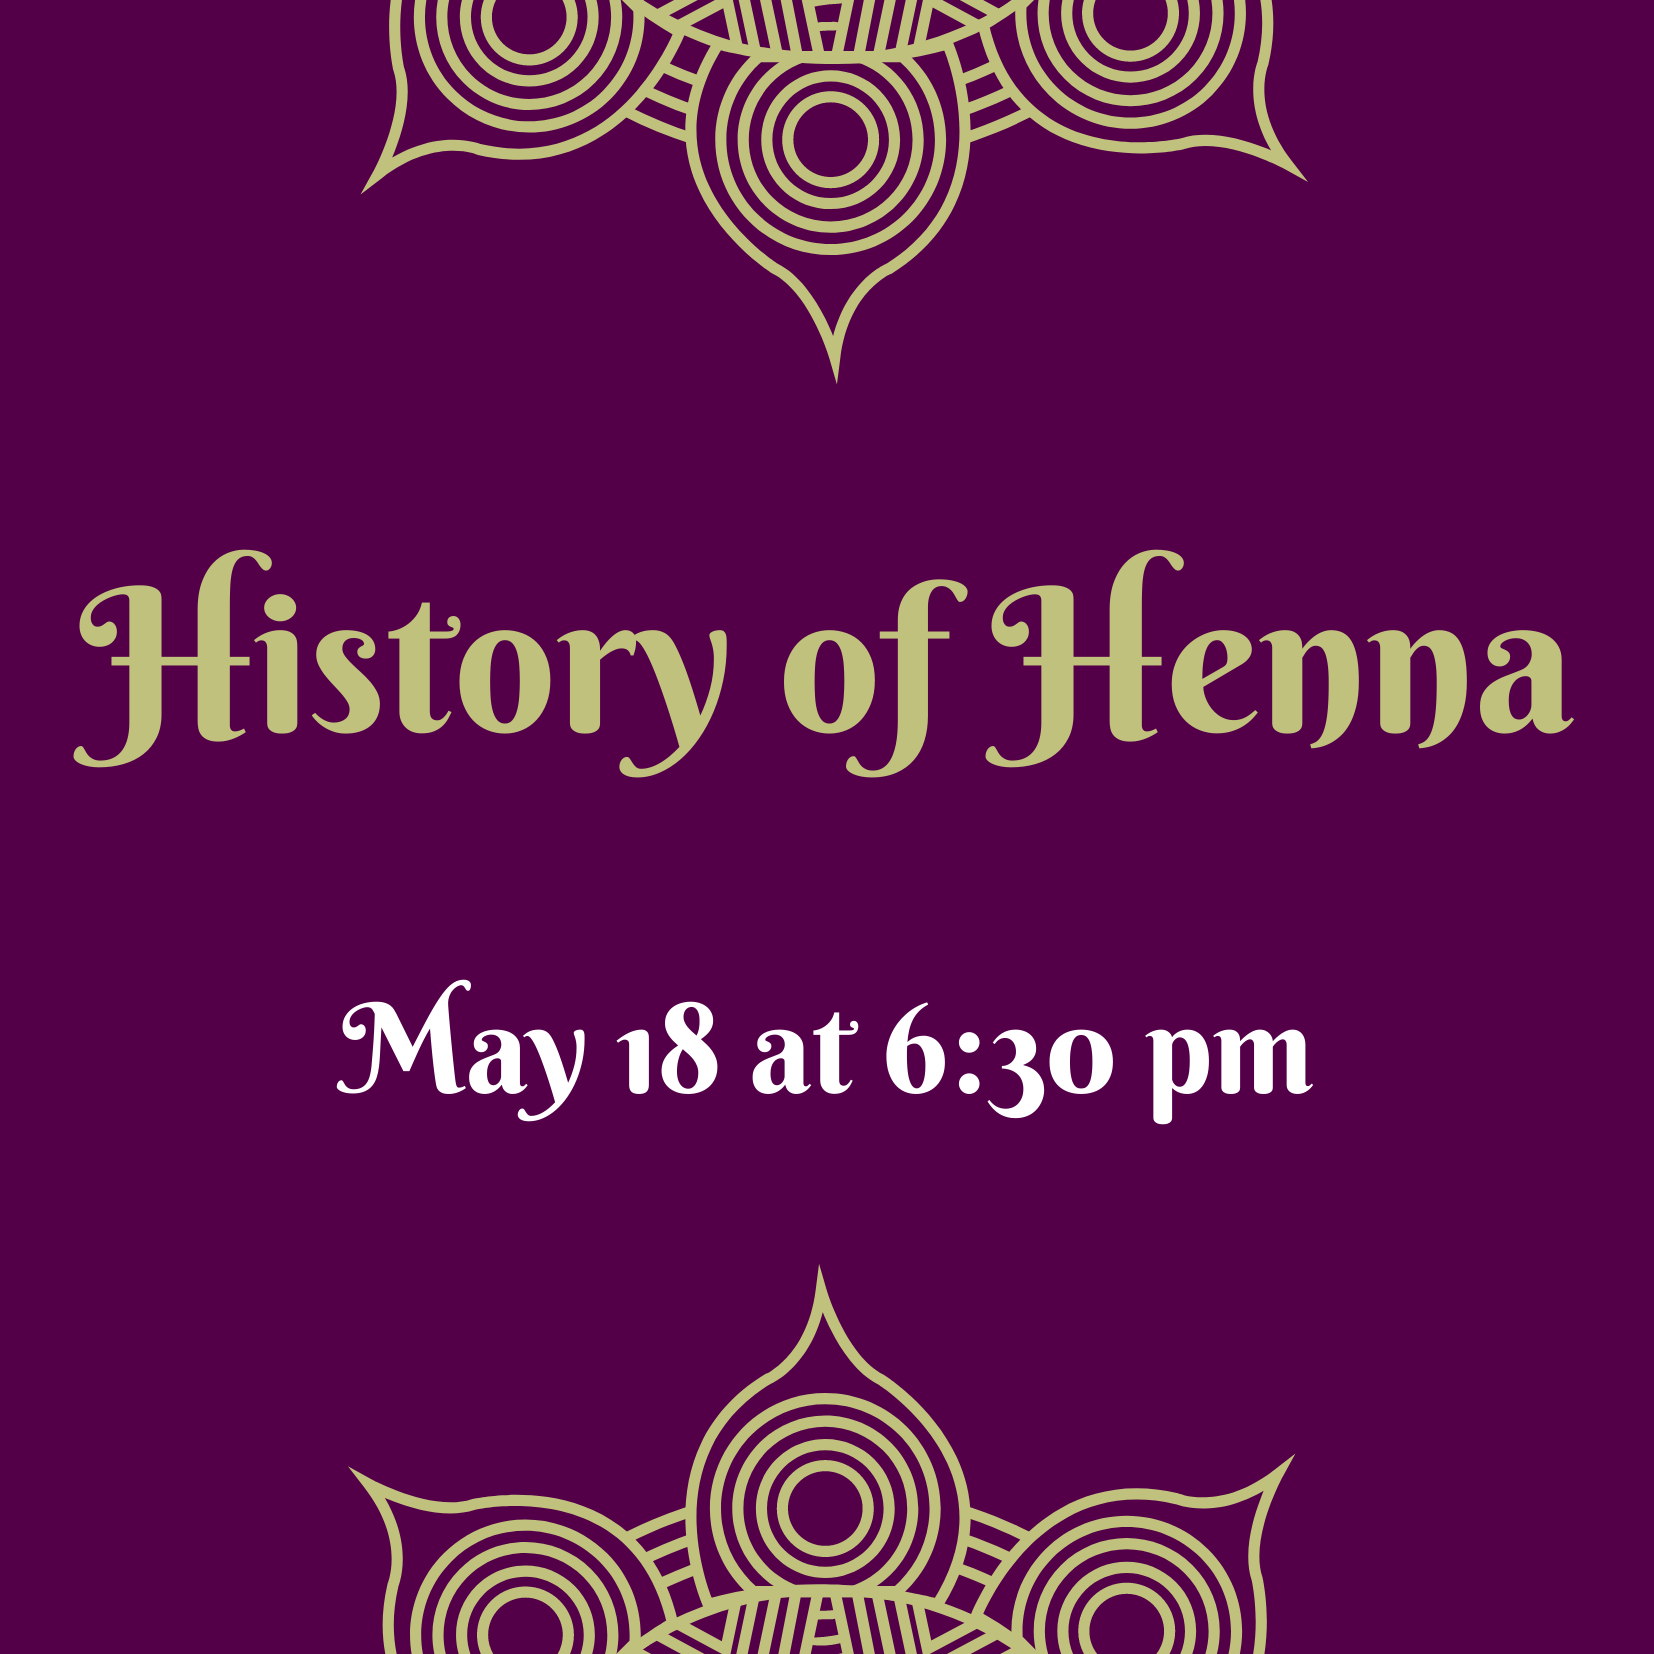 History of henna